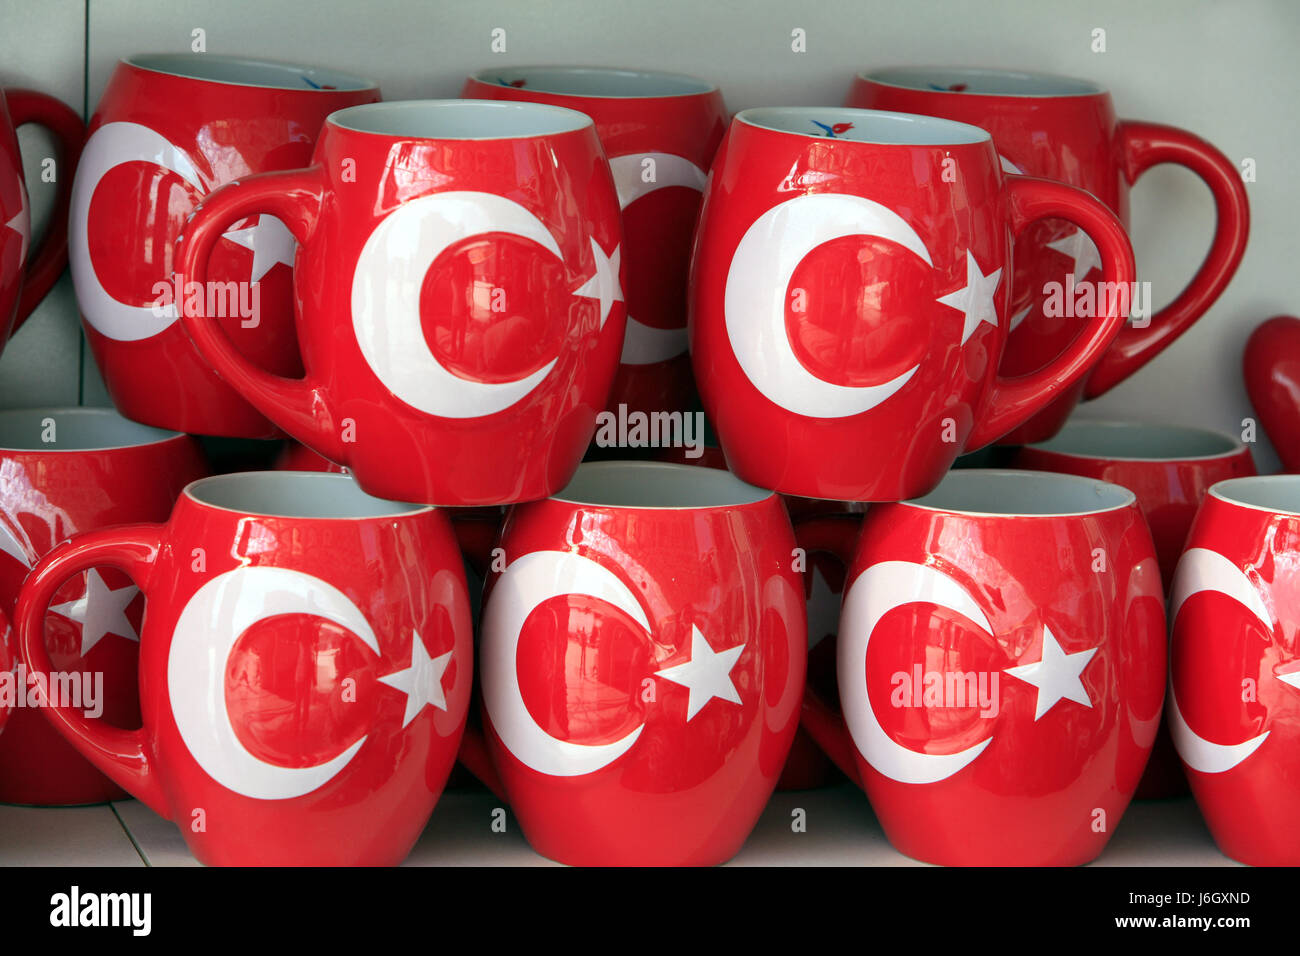 Tasse Farbe Andenken Tassen Flagge Türkei türkische Souvenir Geschäfte  beschäftigen Stockfotografie - Alamy